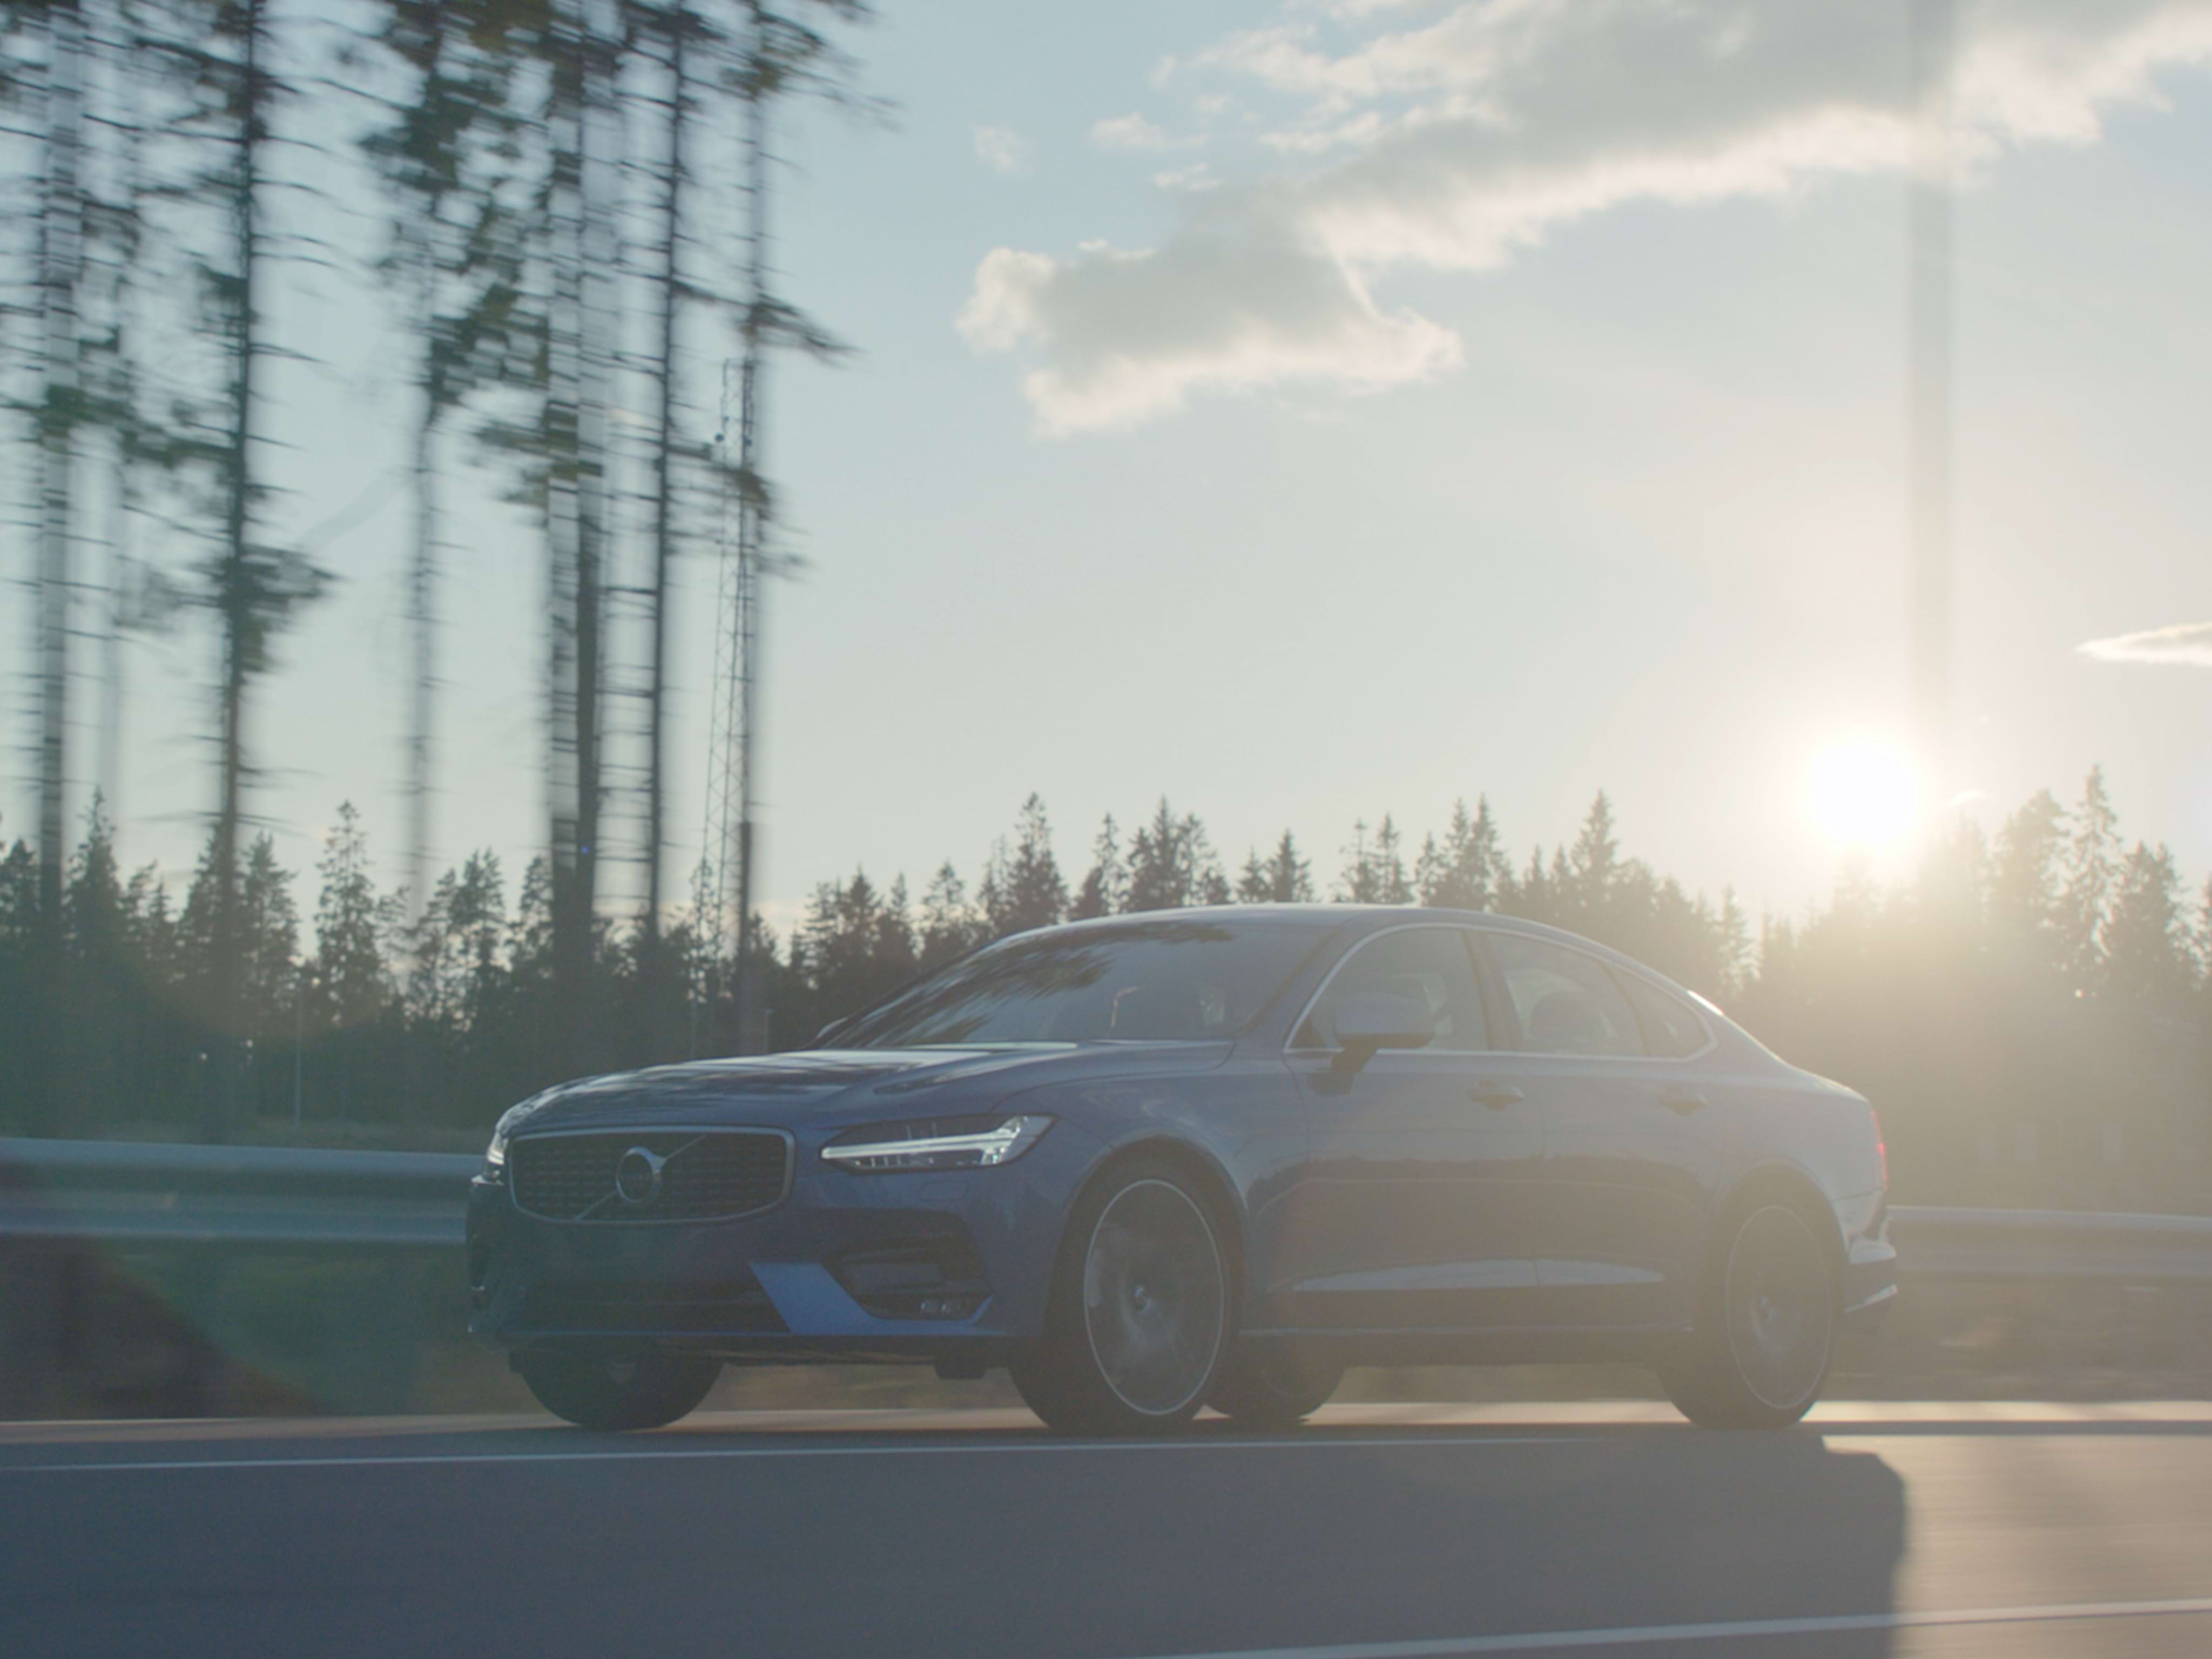 Laajakulmakuva Denim Blue -värisestä Volvo S90 -sedanista metsätiellä aurinkoisena päivänä.